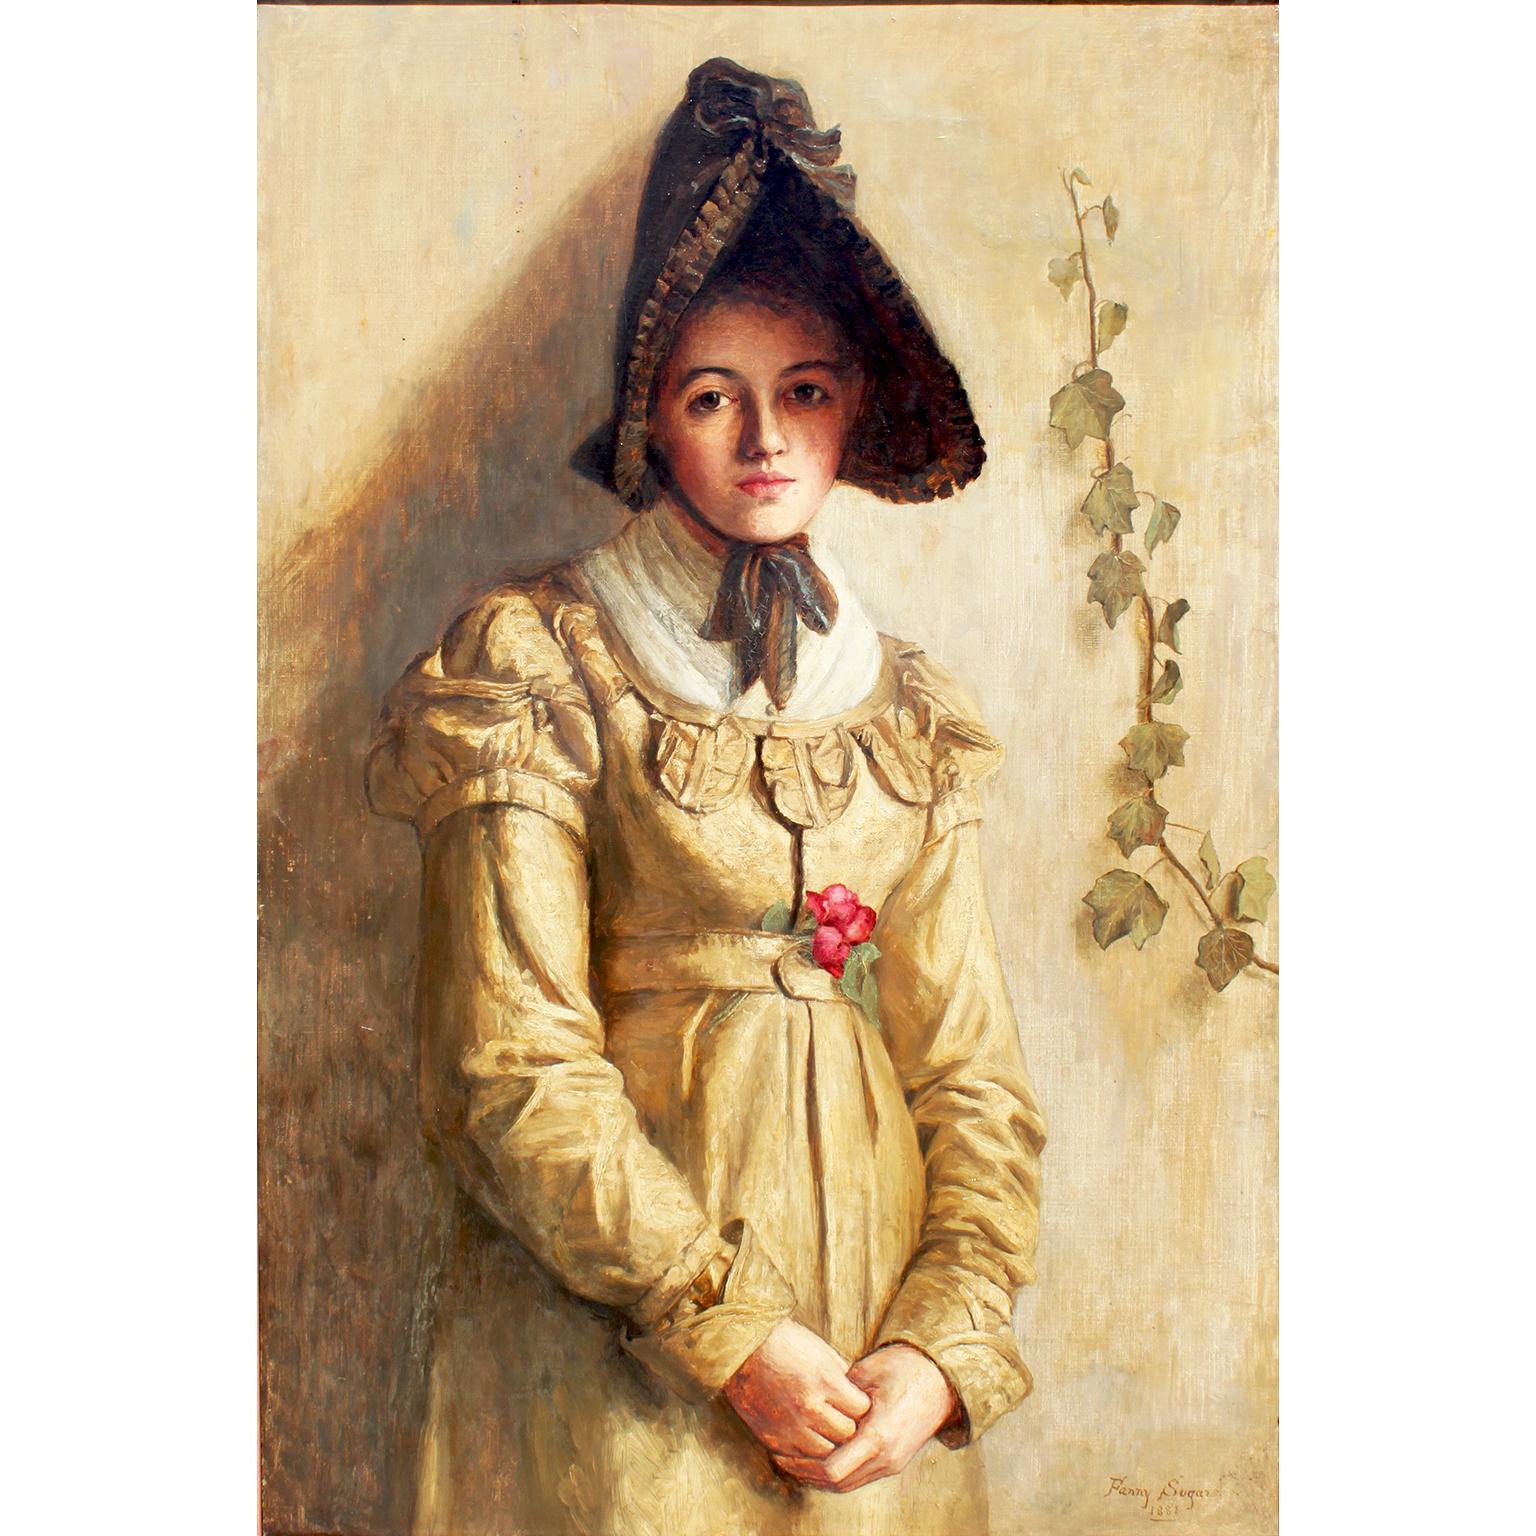 Fanny Sugars (britannique, 1856-1933) Charmante huile sur toile de l'époque victorienne représentant un portrait de jeune fille debout portant un bonnet, dans un cadre en bois doré postérieur. Signé et daté : Fanny Sugars / 1881